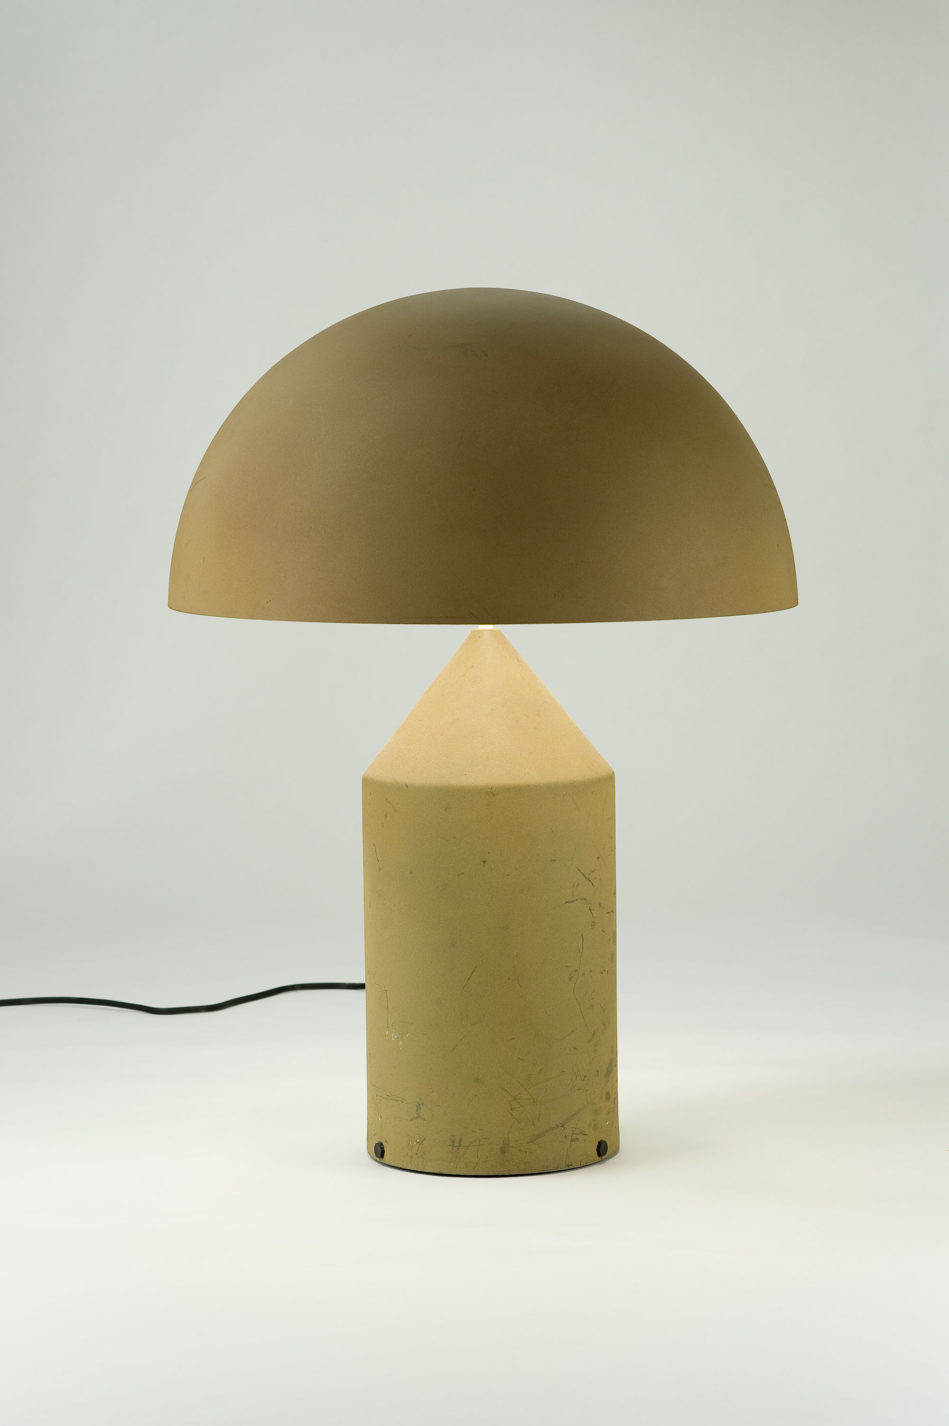 Lampe de table beige à base cylindrique dont l’extrémité forme un cône, coiffée d’un abat-jour demi-sphérique opaque.